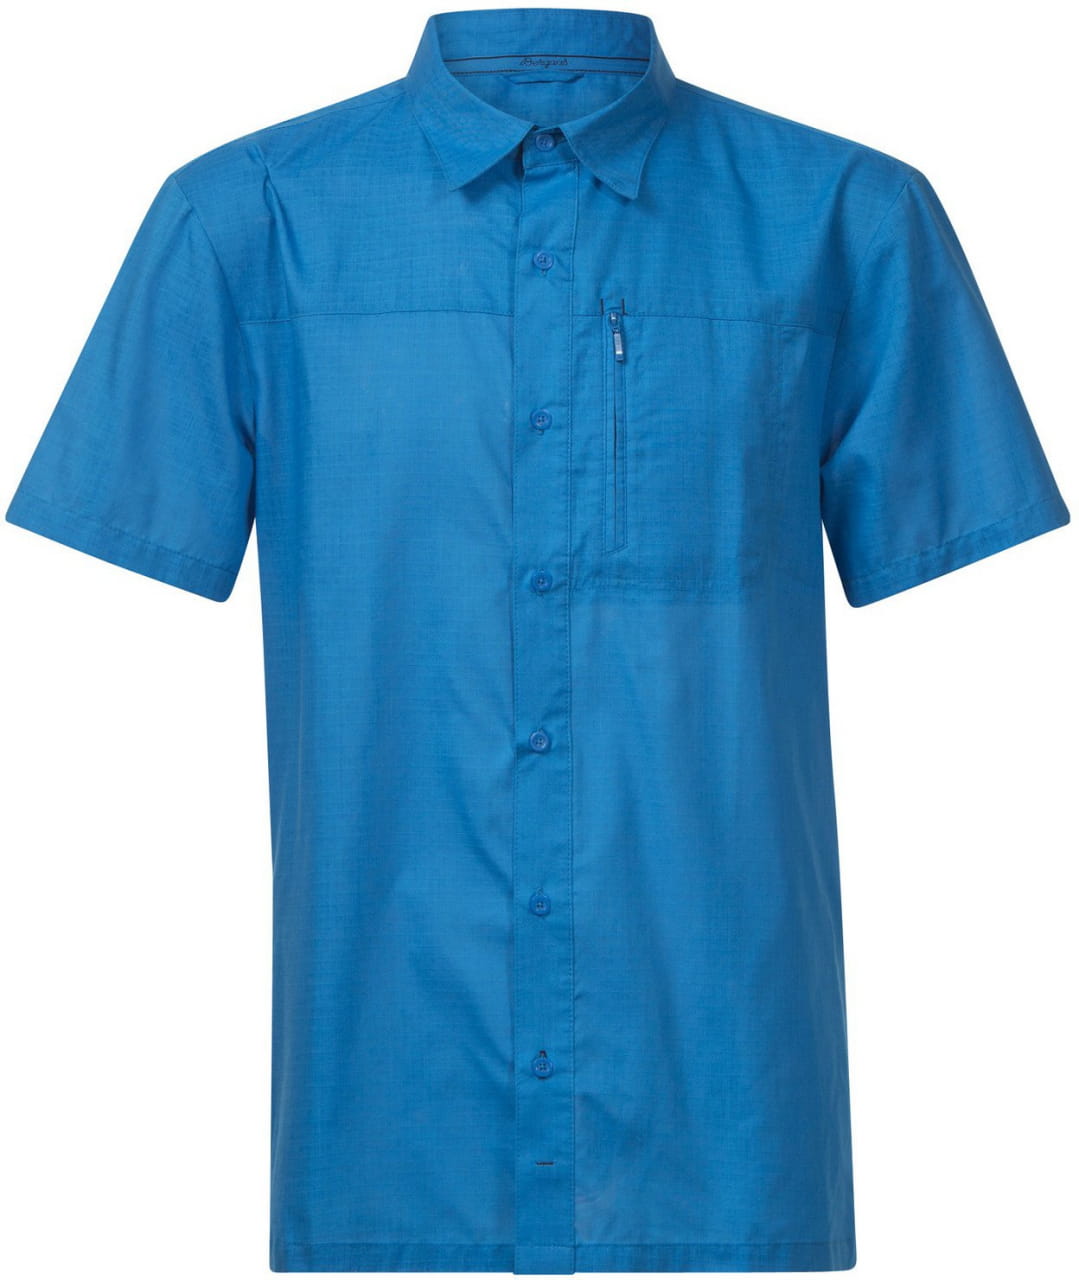 Pánska košeľa s krátkym rukávom Bergans Sletta Shirt Ss